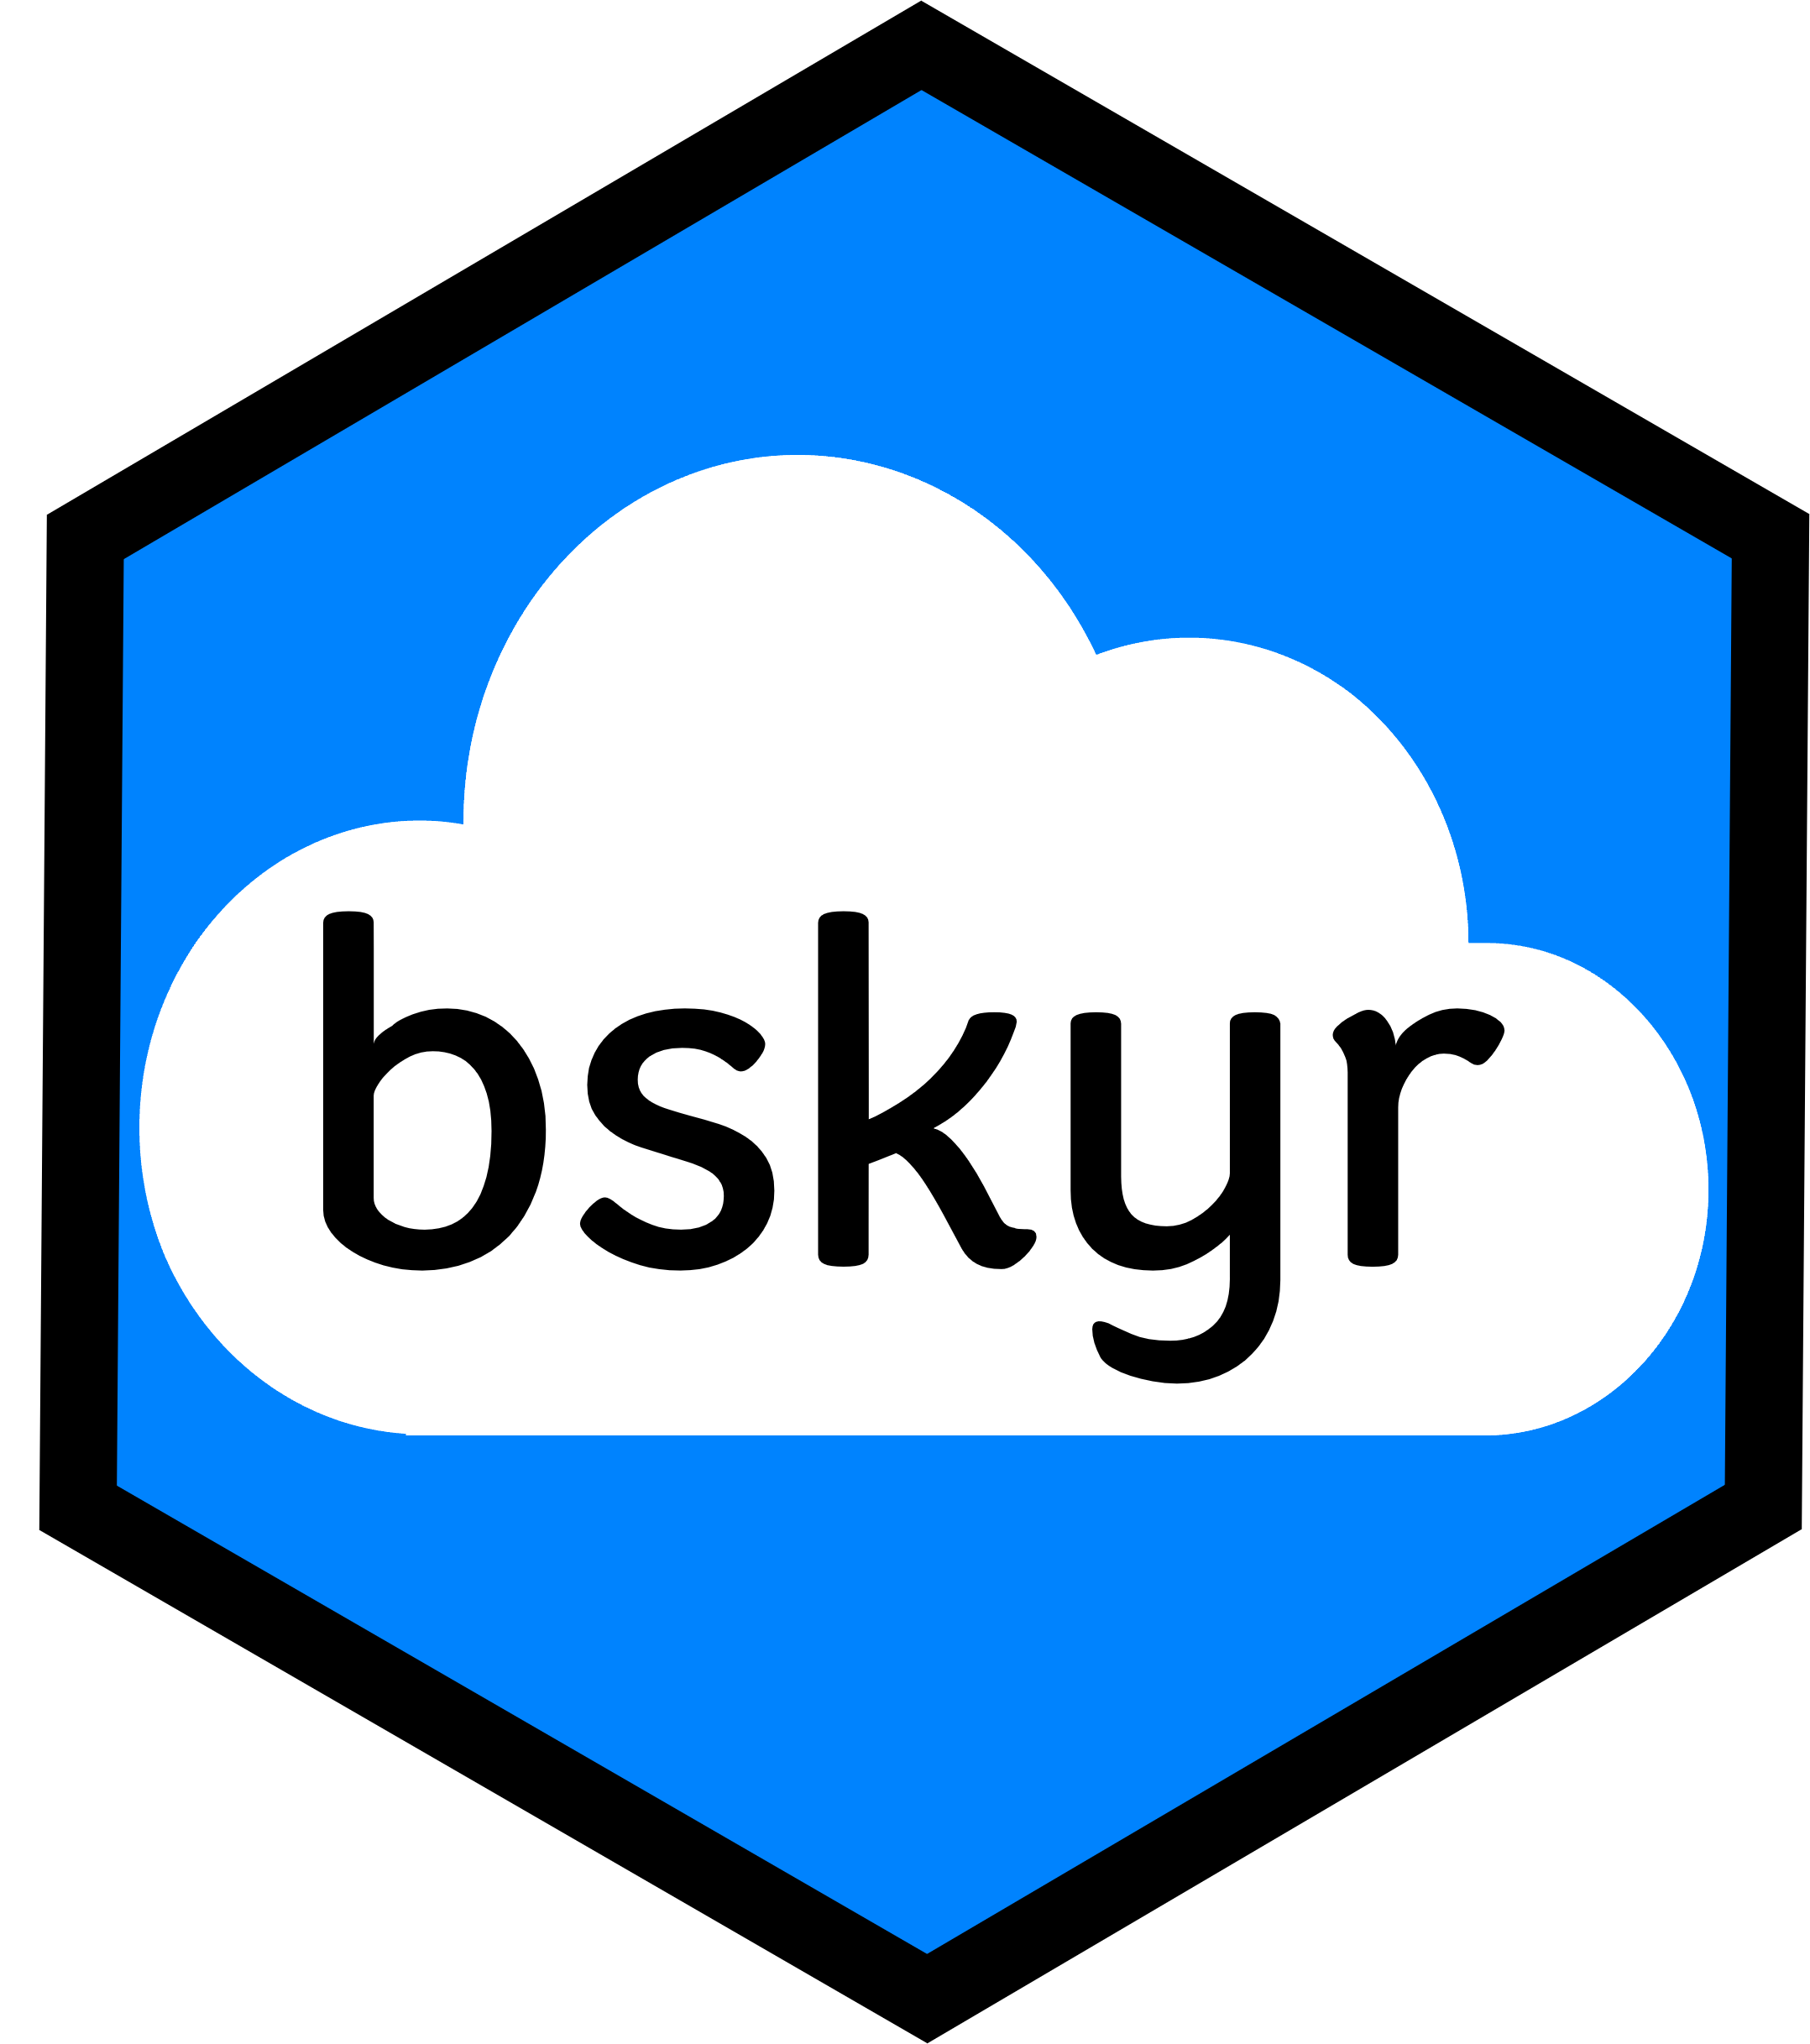 bskyr hex logo